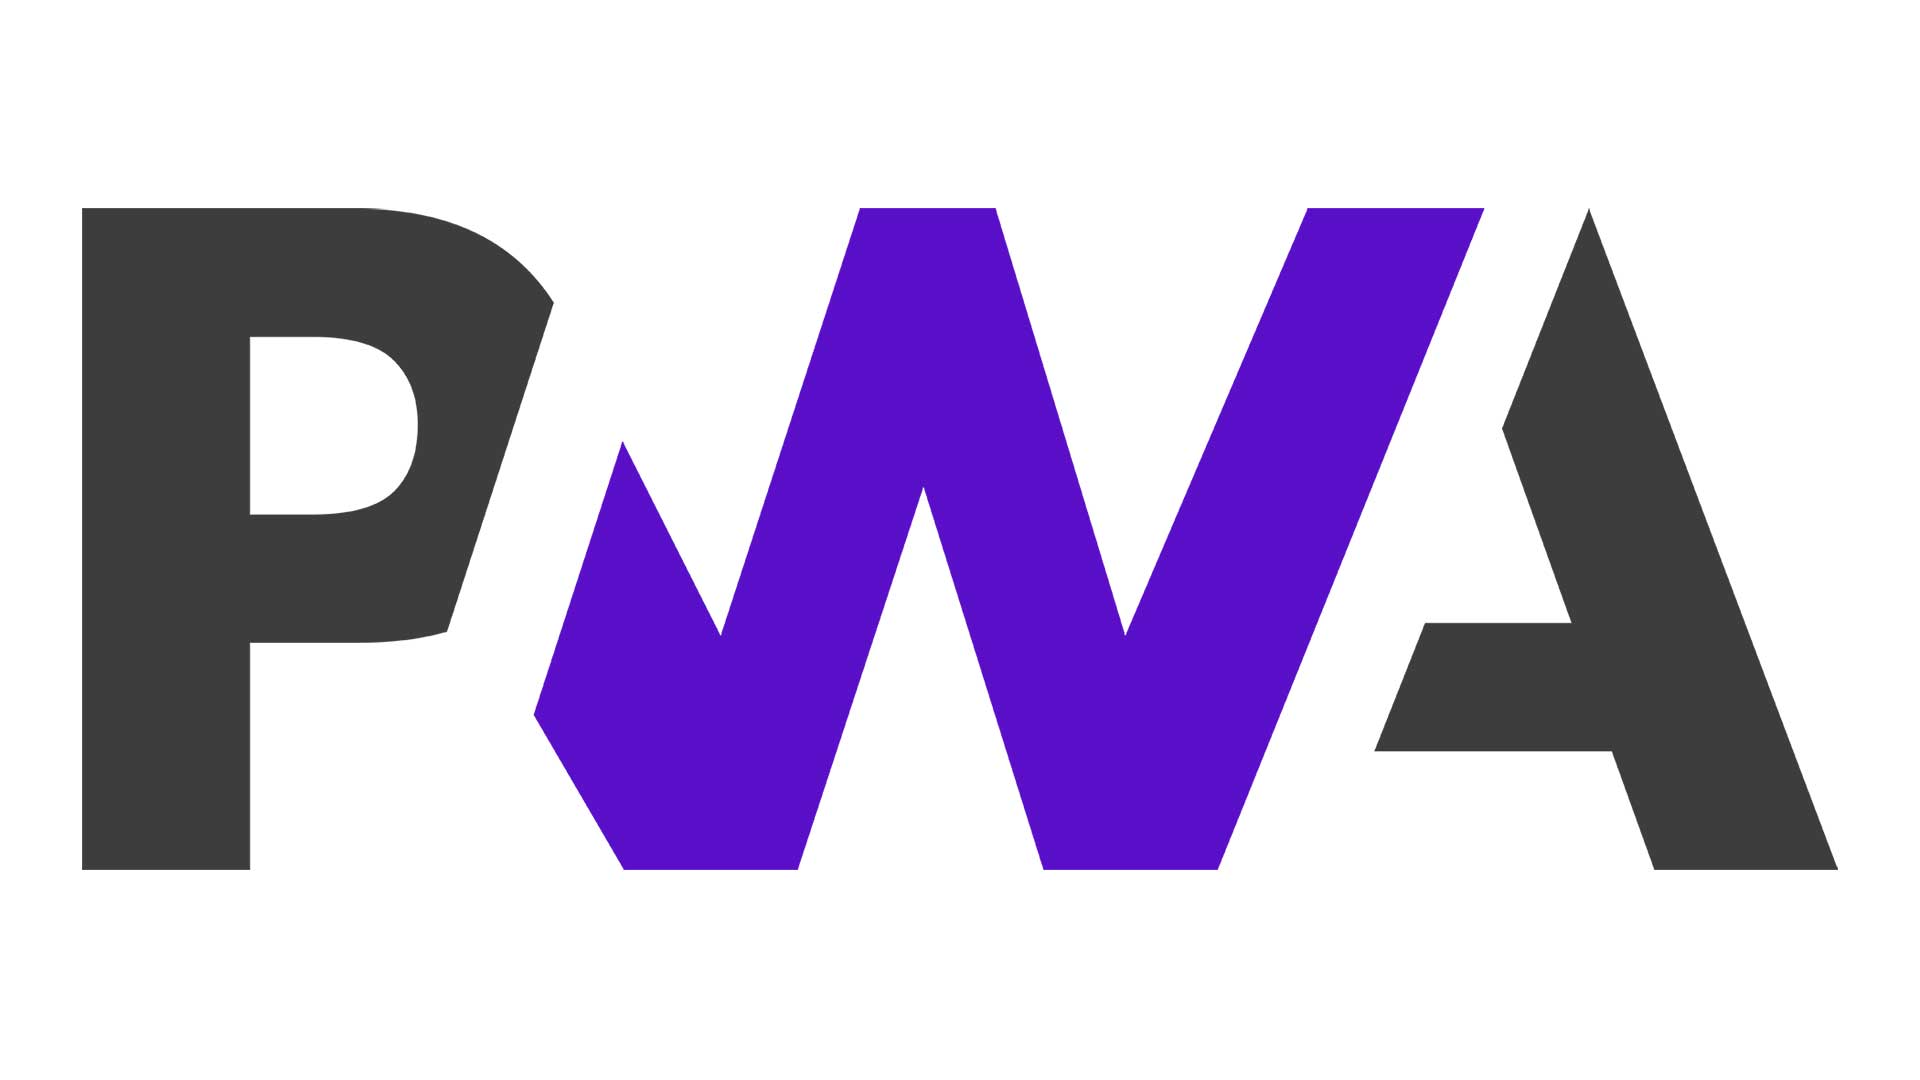 Nieoficjalne logo PWA